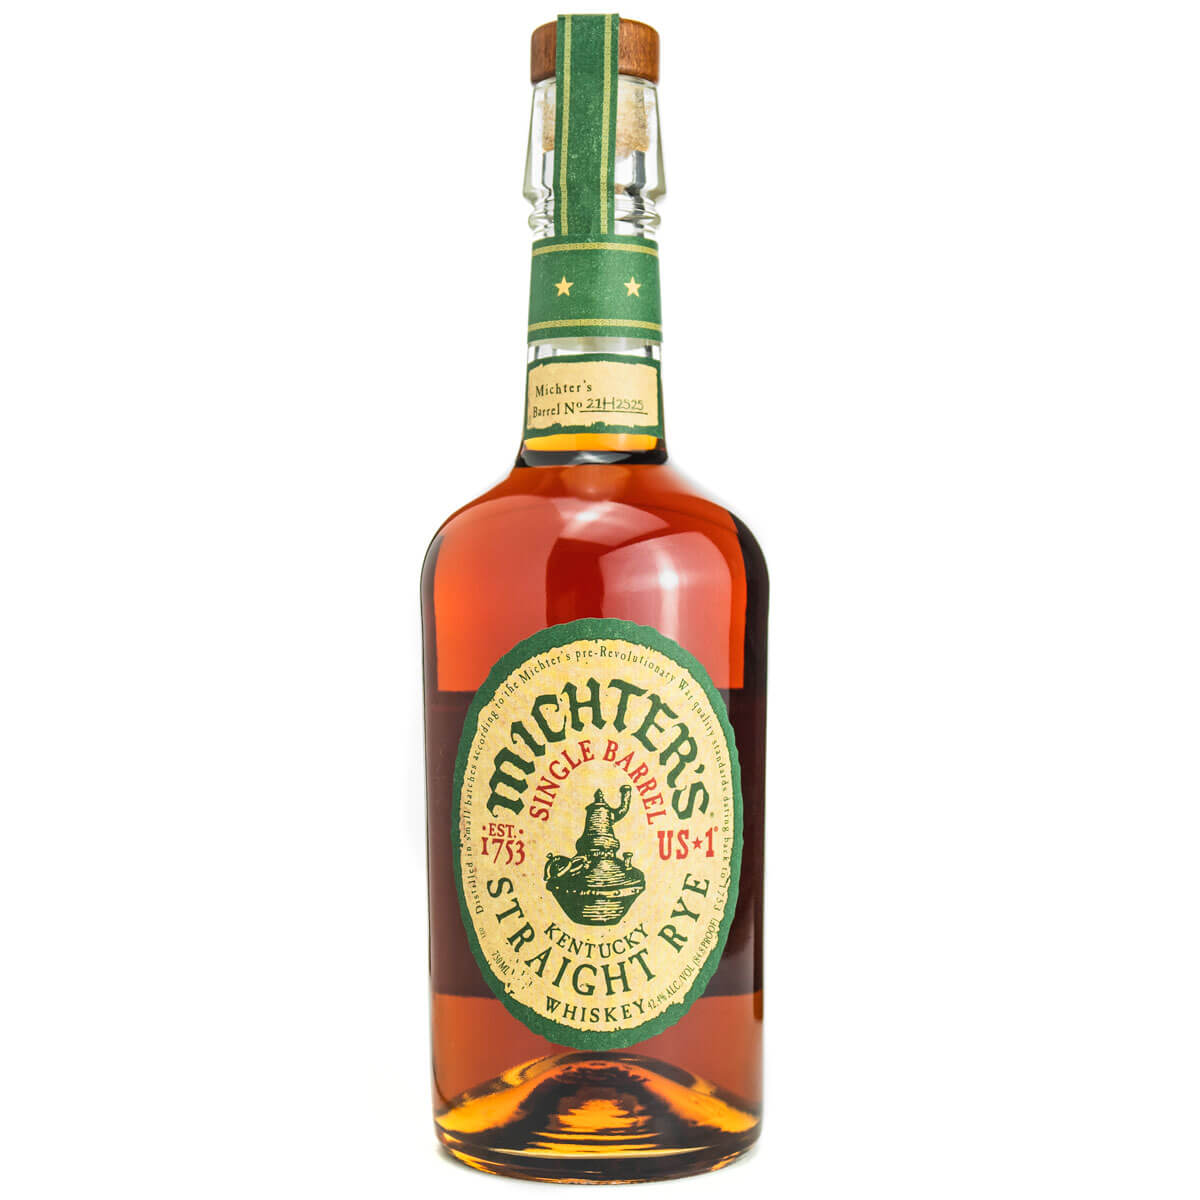 Michter's US 1 Straight Rye Whiskey bottle